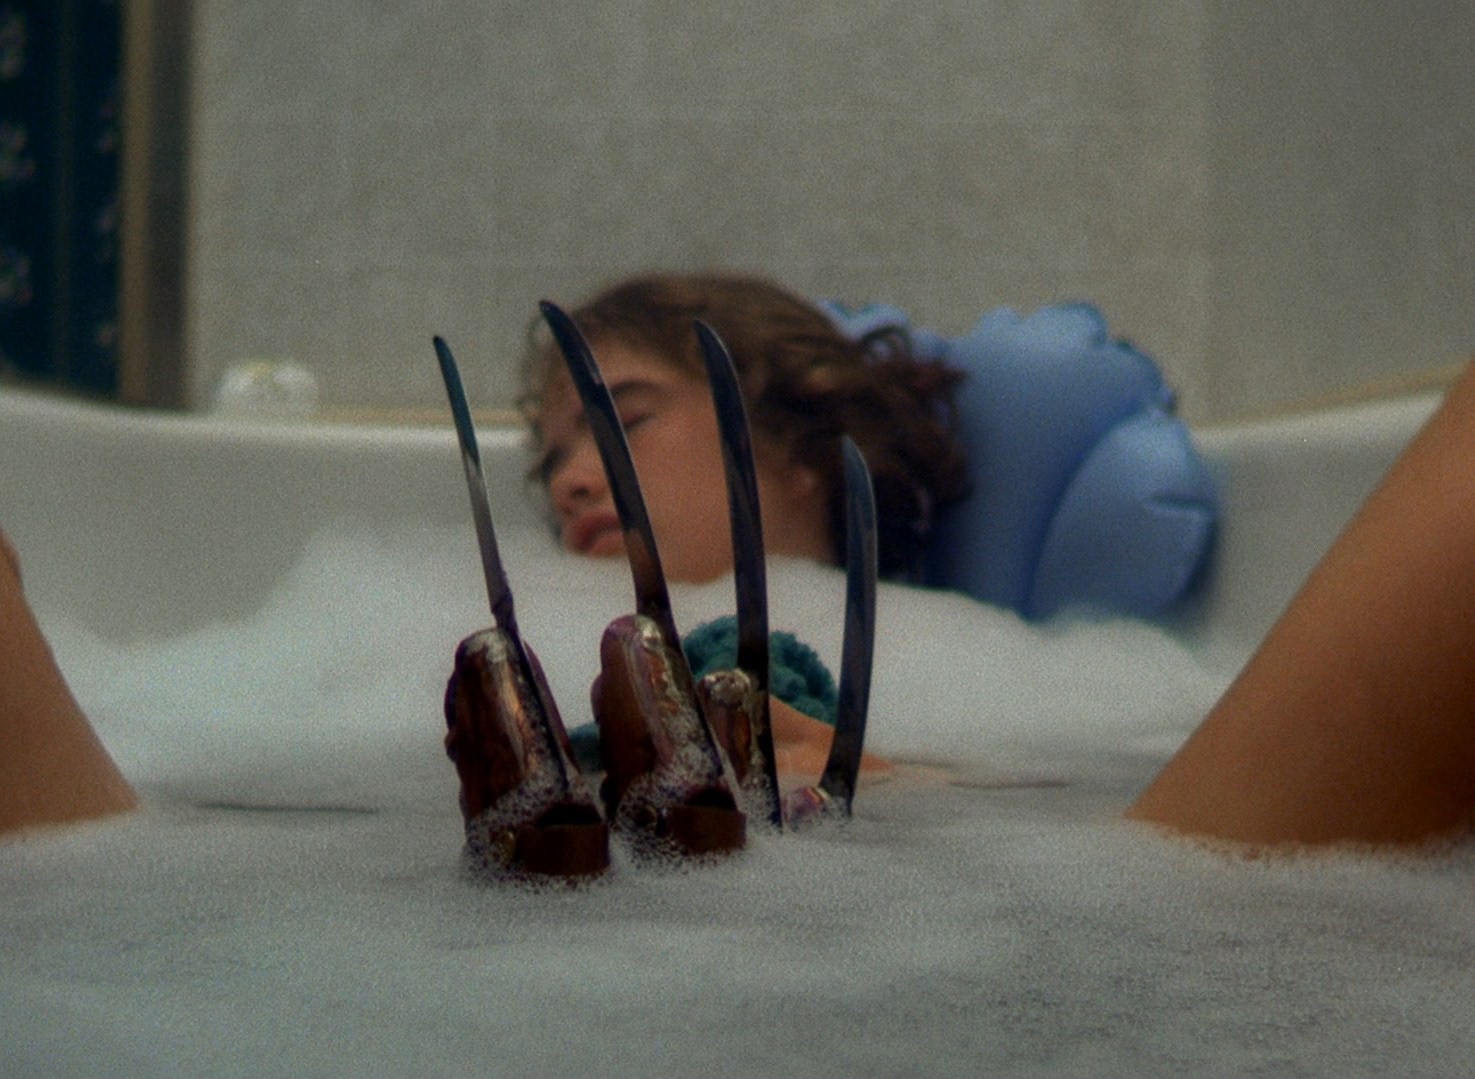 Cena do filme A Hora do Pesadelo. A imagem mostra a personagem Nancy, interpretada pela atriz Amanda Wyss, numa banheira de banho. Ela é uma jovem branca, loira, de cabelos curtos, e está apoada nas costas da banheira, de olhos fechados e com as pernas abertas. No meio, surge a luva de tesouras de Freddy Krueger,